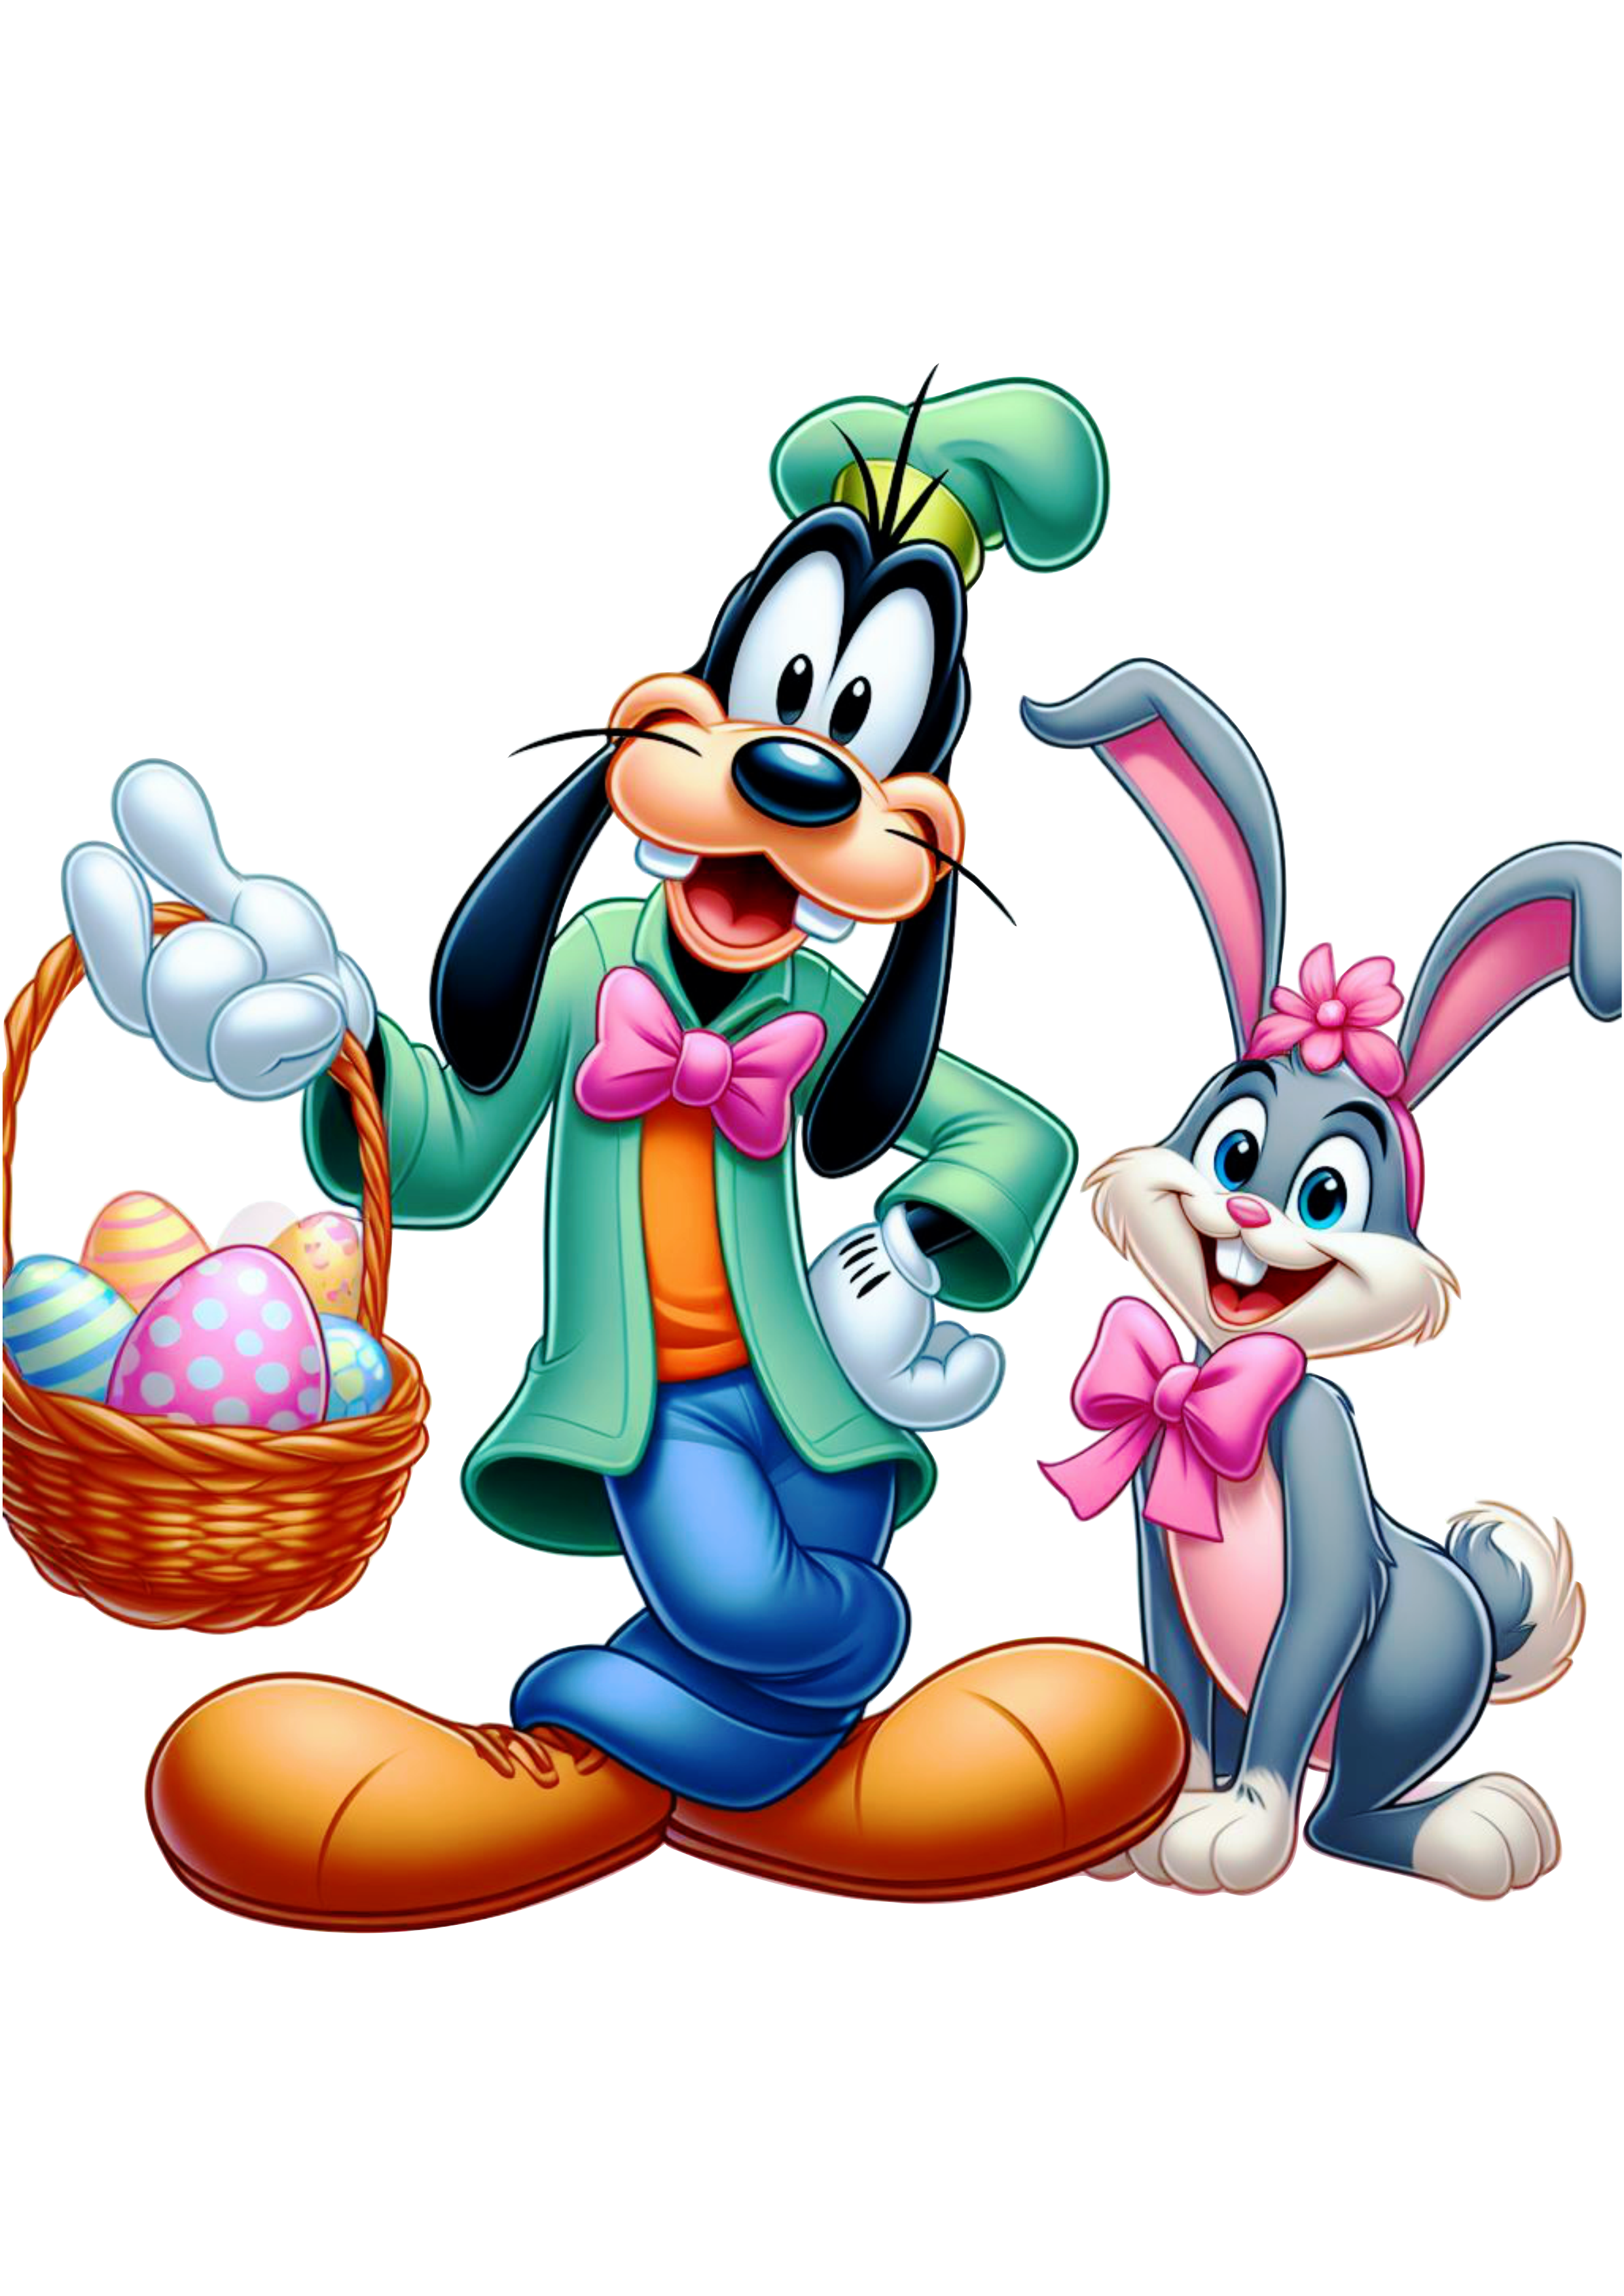 Turma do Mickey Mouse especial de páscoa pateta com cesta de ovos de chocolate png